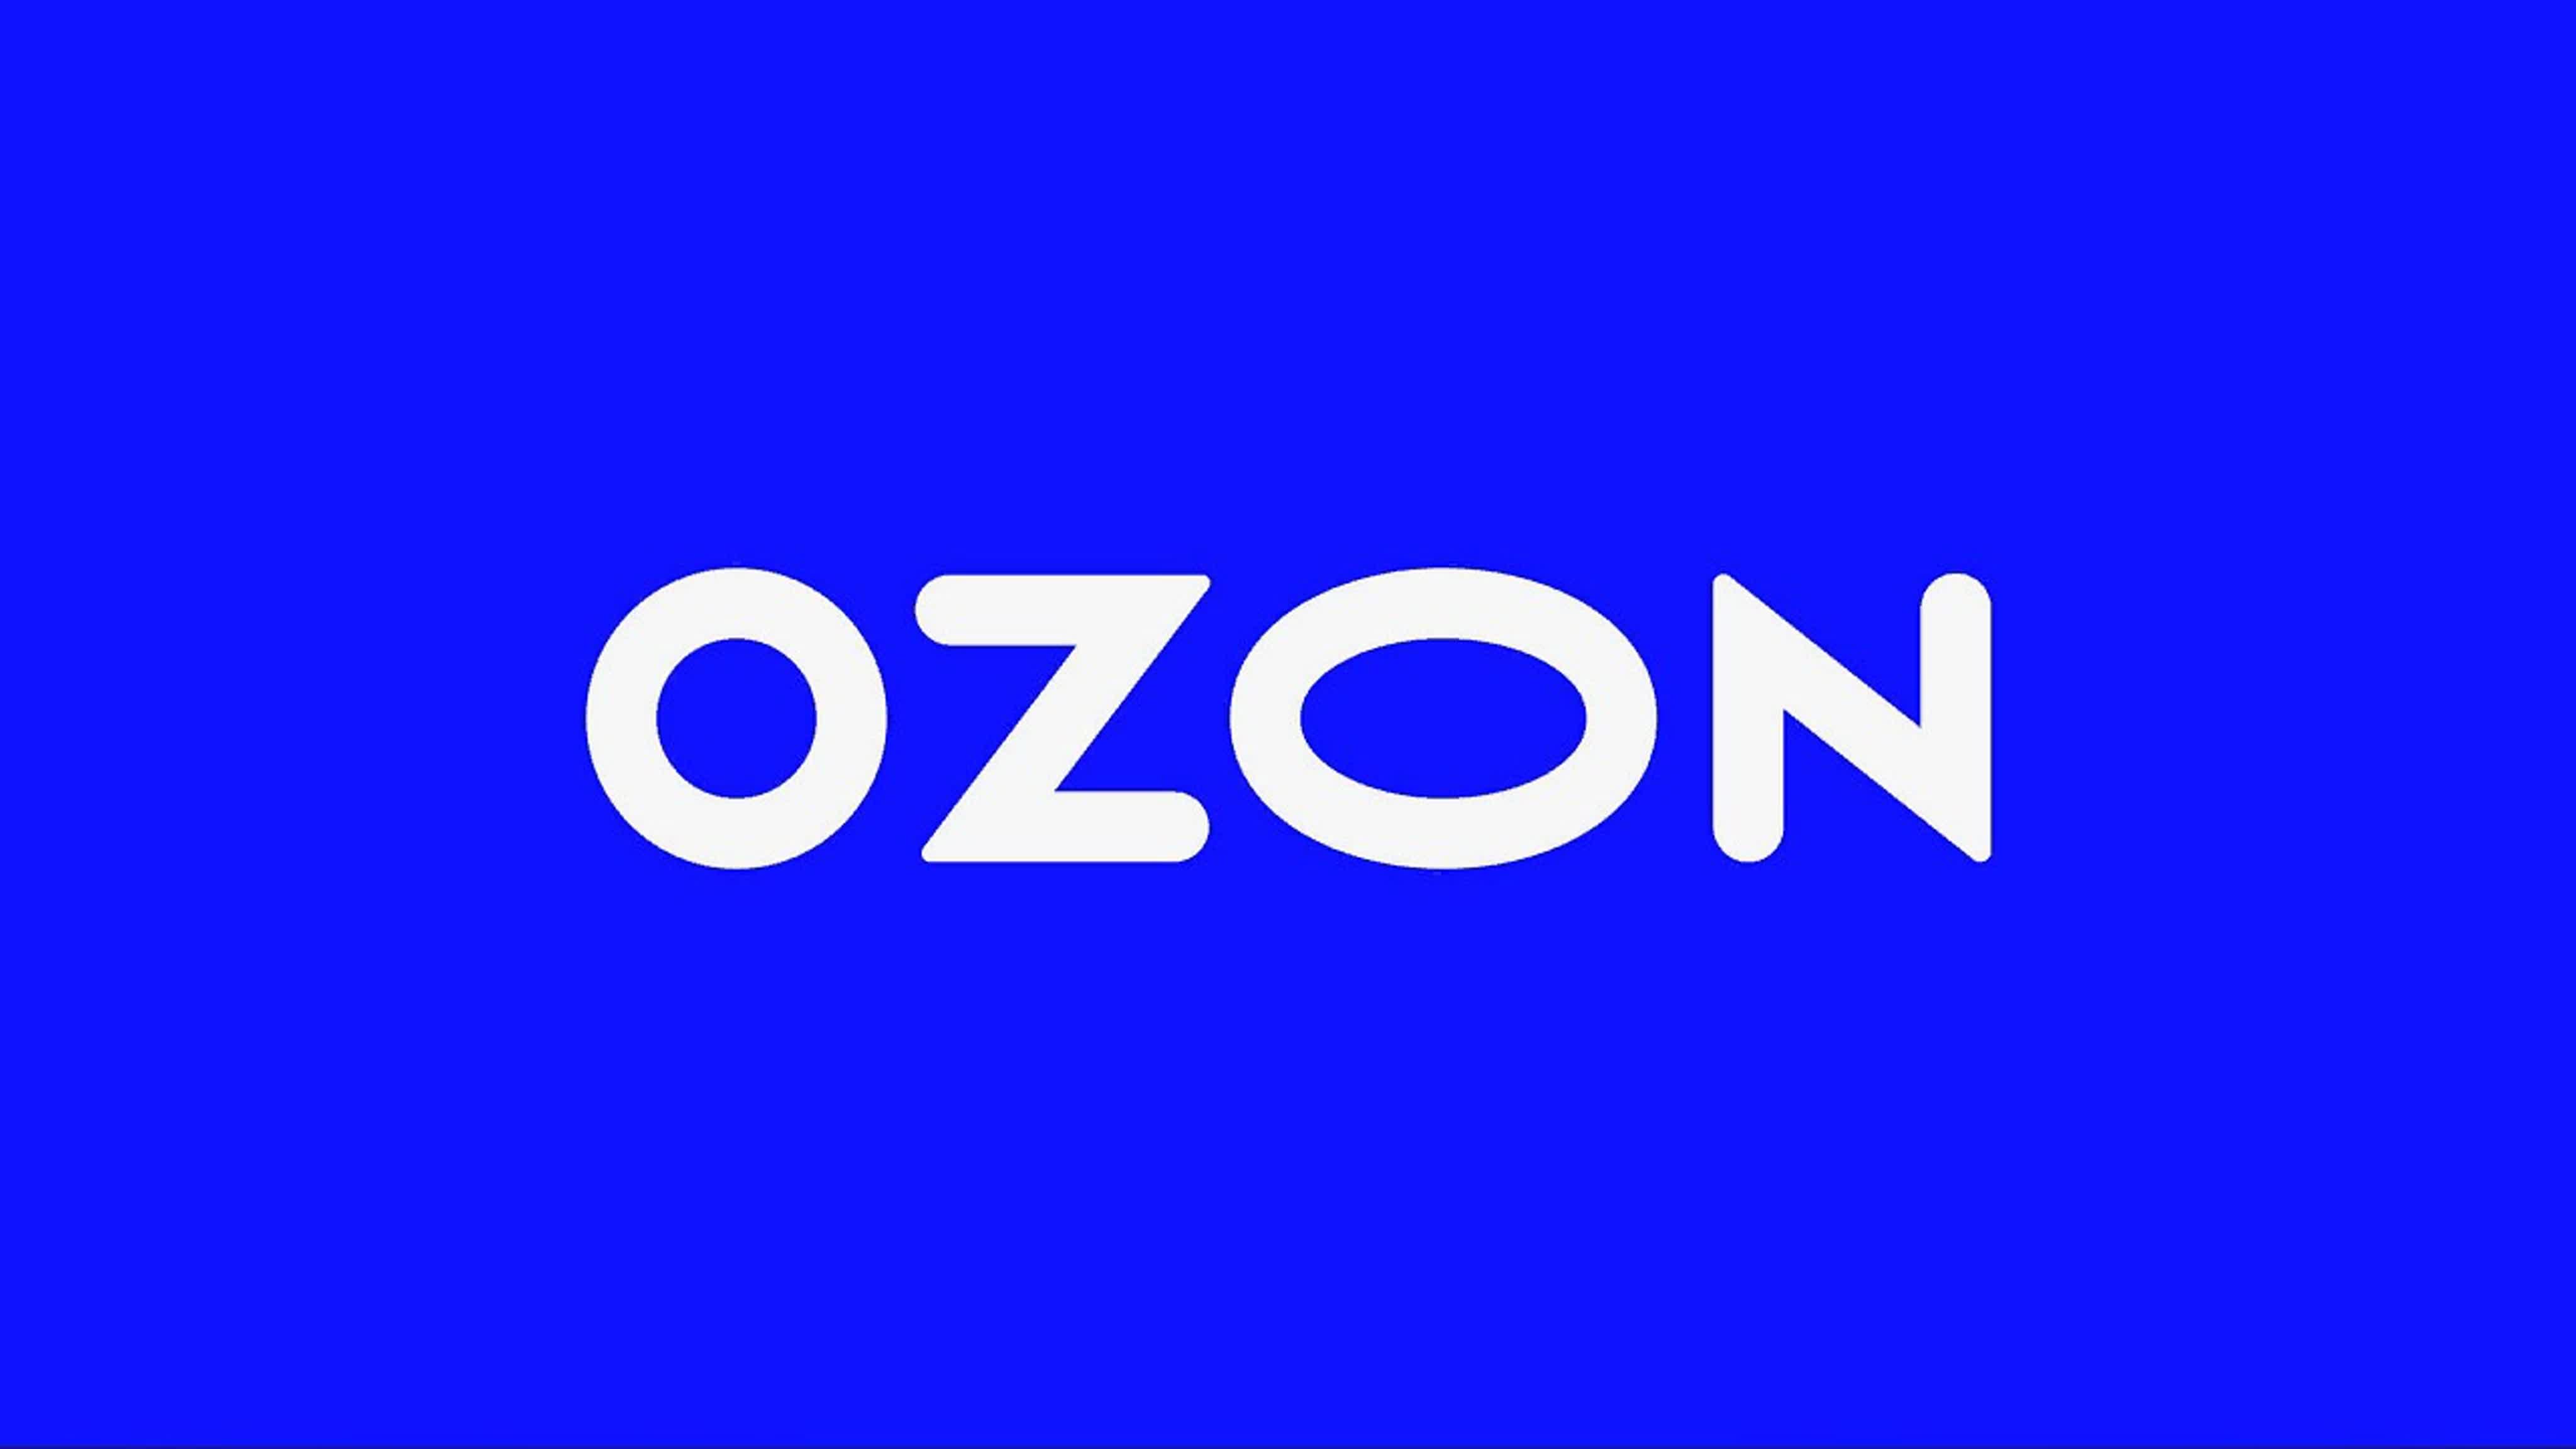 Озон 200 рублей. Озон. Реклама Озон. OZON эмблема. Цвета OZON.